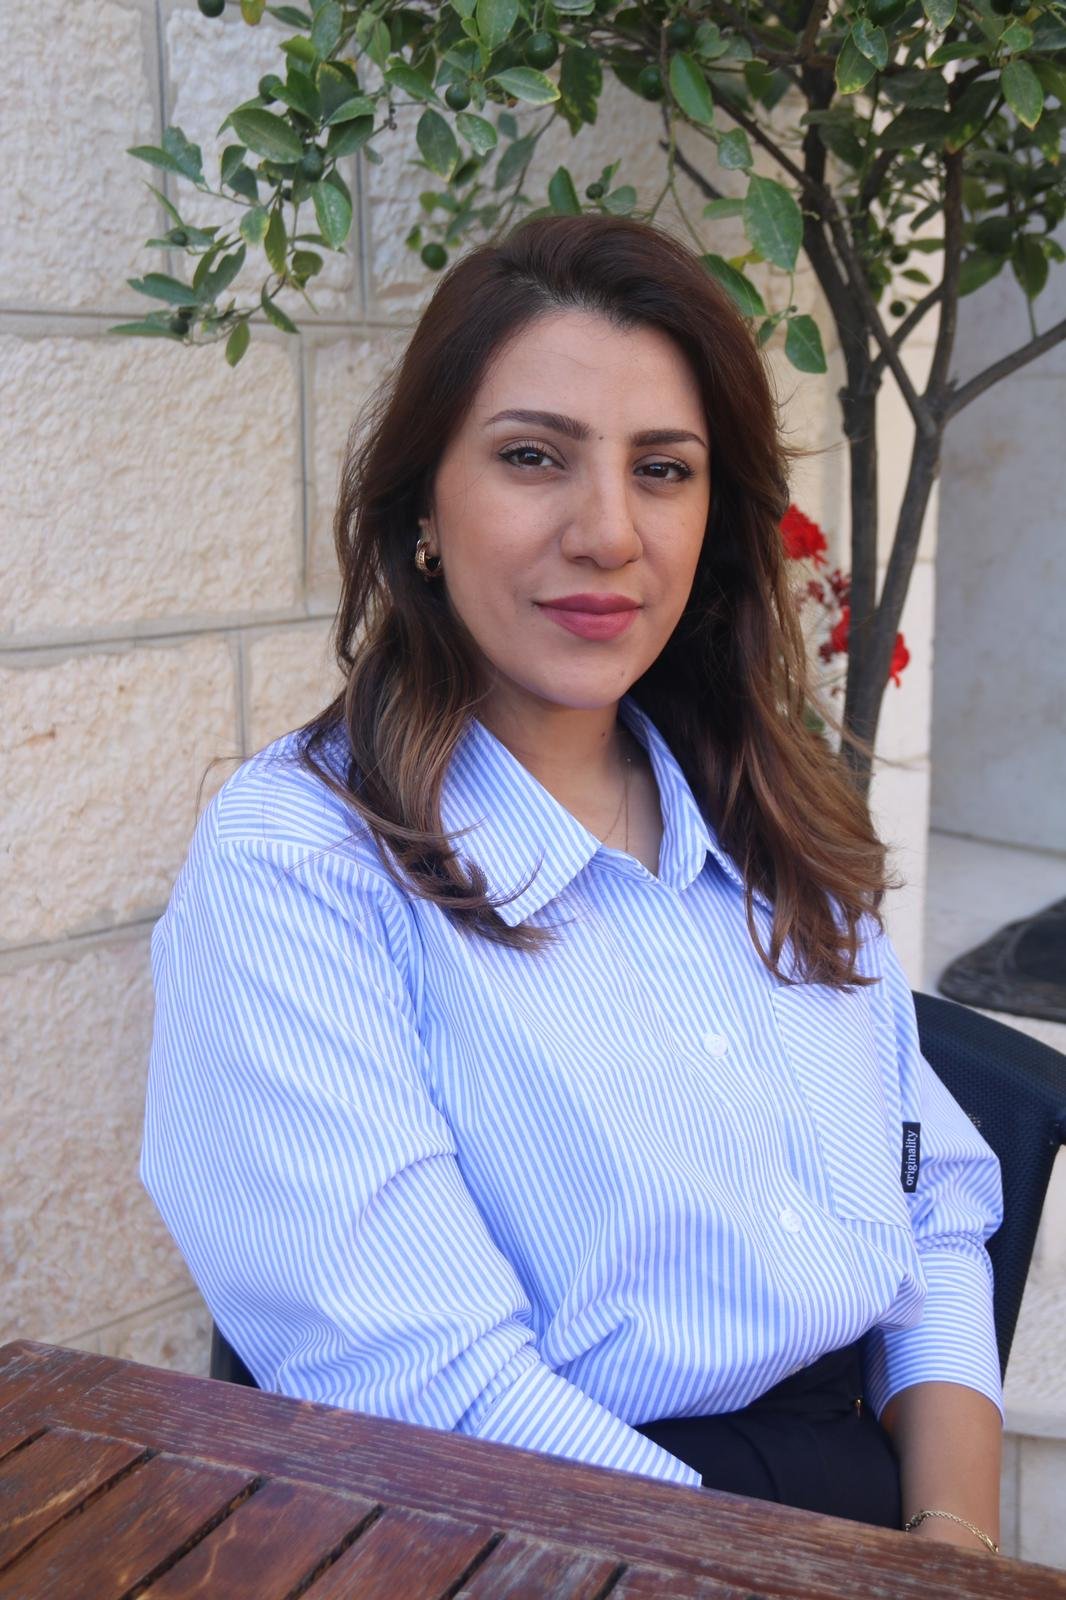 سندس الحوت المرشحة لانتخابات بلدية القدس لـ "بكرا": الانتخابات فرصة لتغيير الواقع المأساوي-2